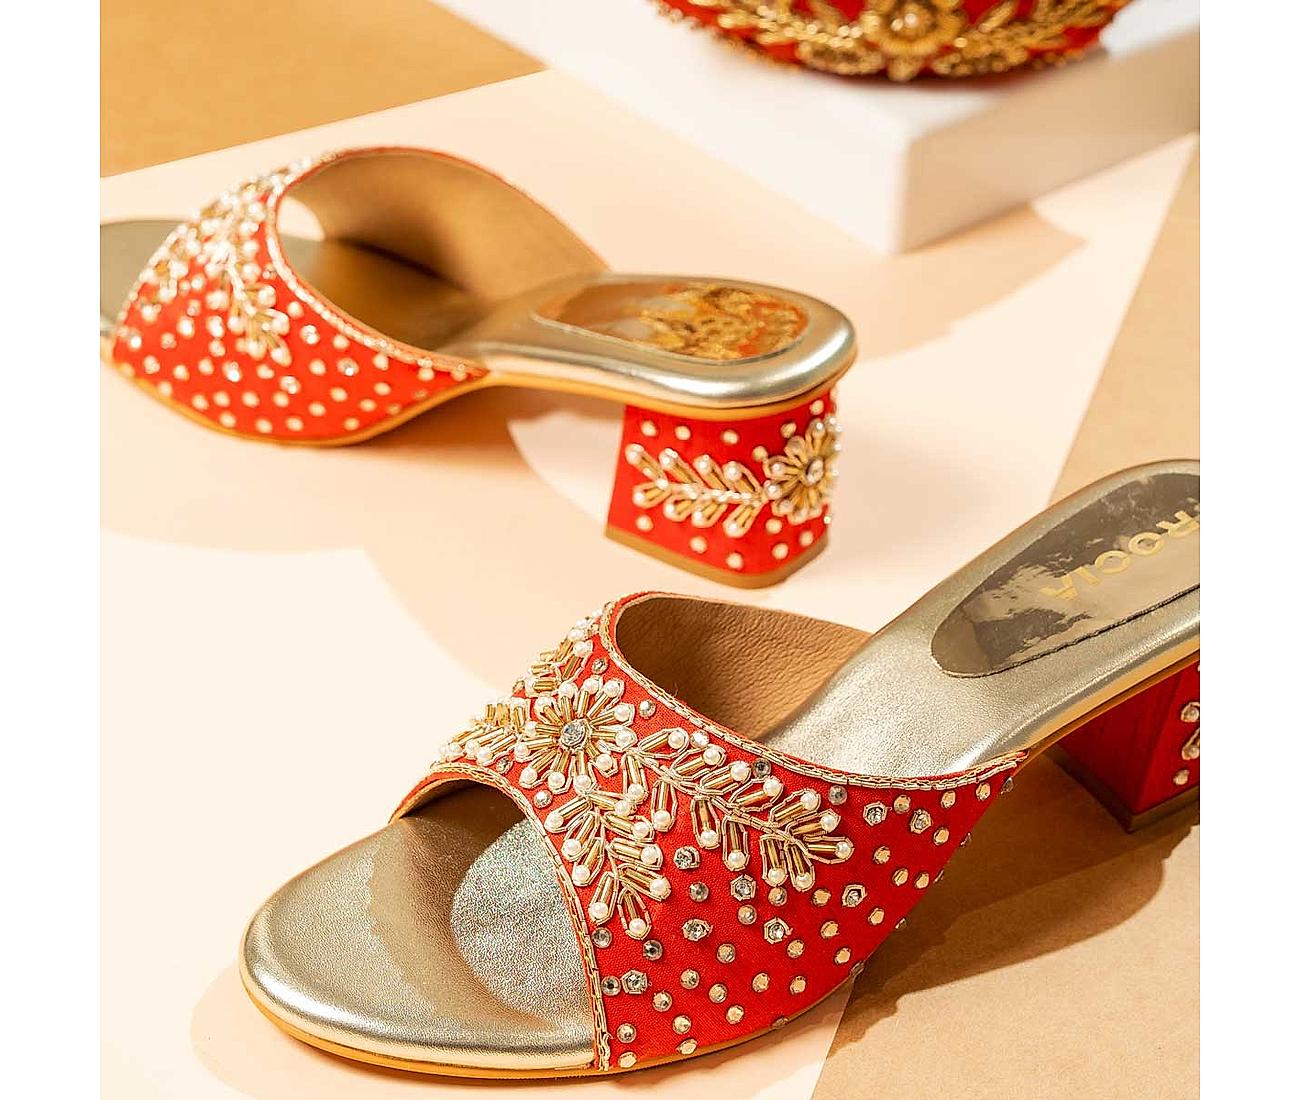 Platform Heels - Buy Platform Heels / Heel Slippers Online at Best Prices  in India | Flipkart.com